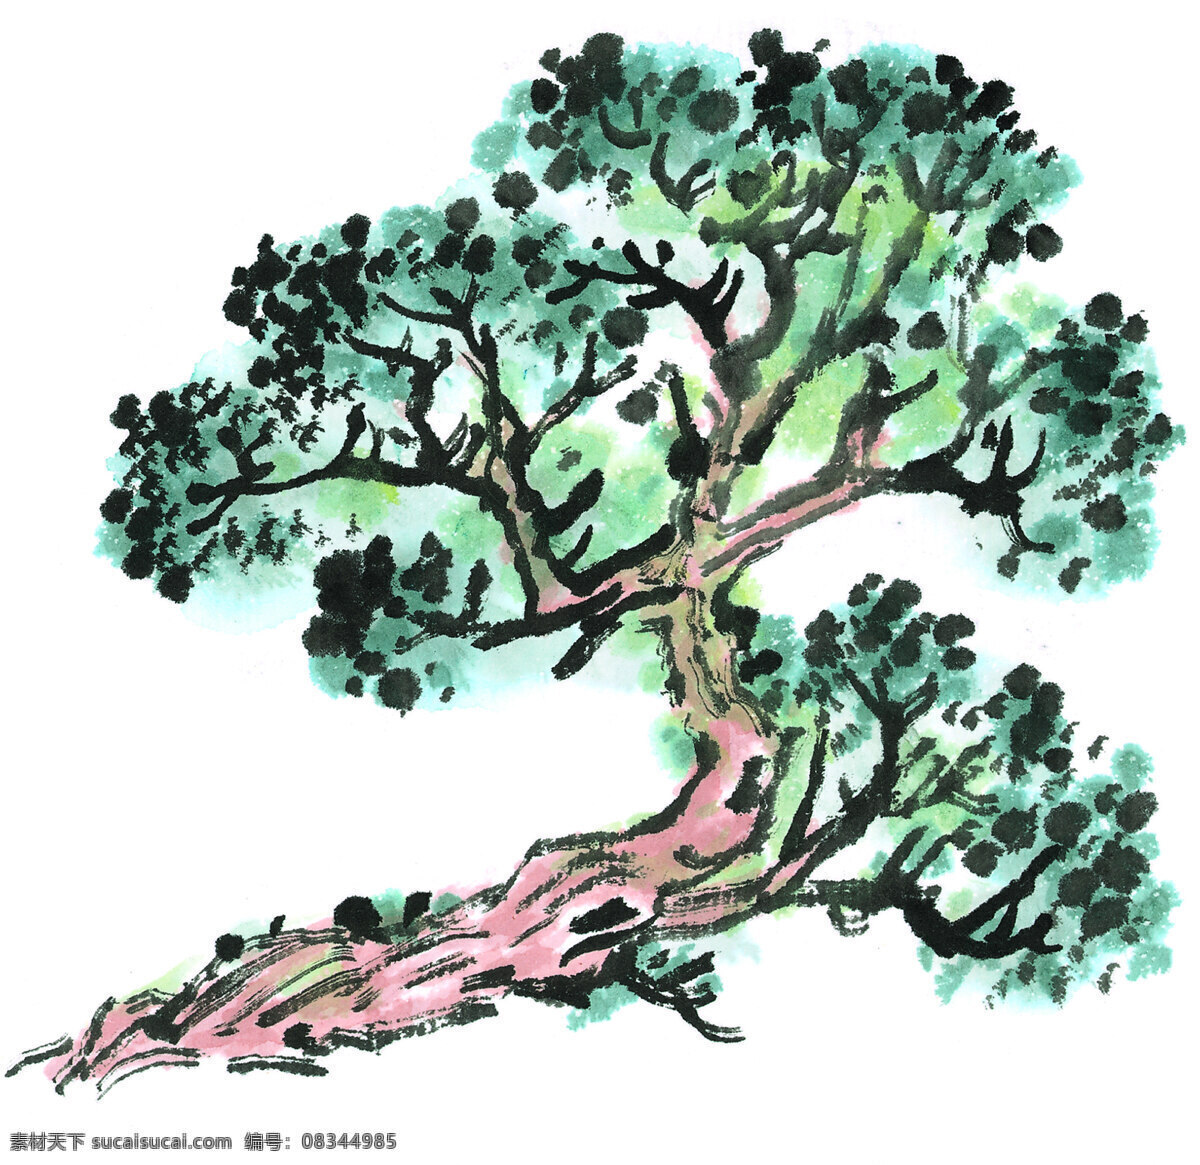 古树免费下载 古树 绘画 手绘 水彩画 水墨画 艺术 源文件 中国画 人文艺术 文化艺术